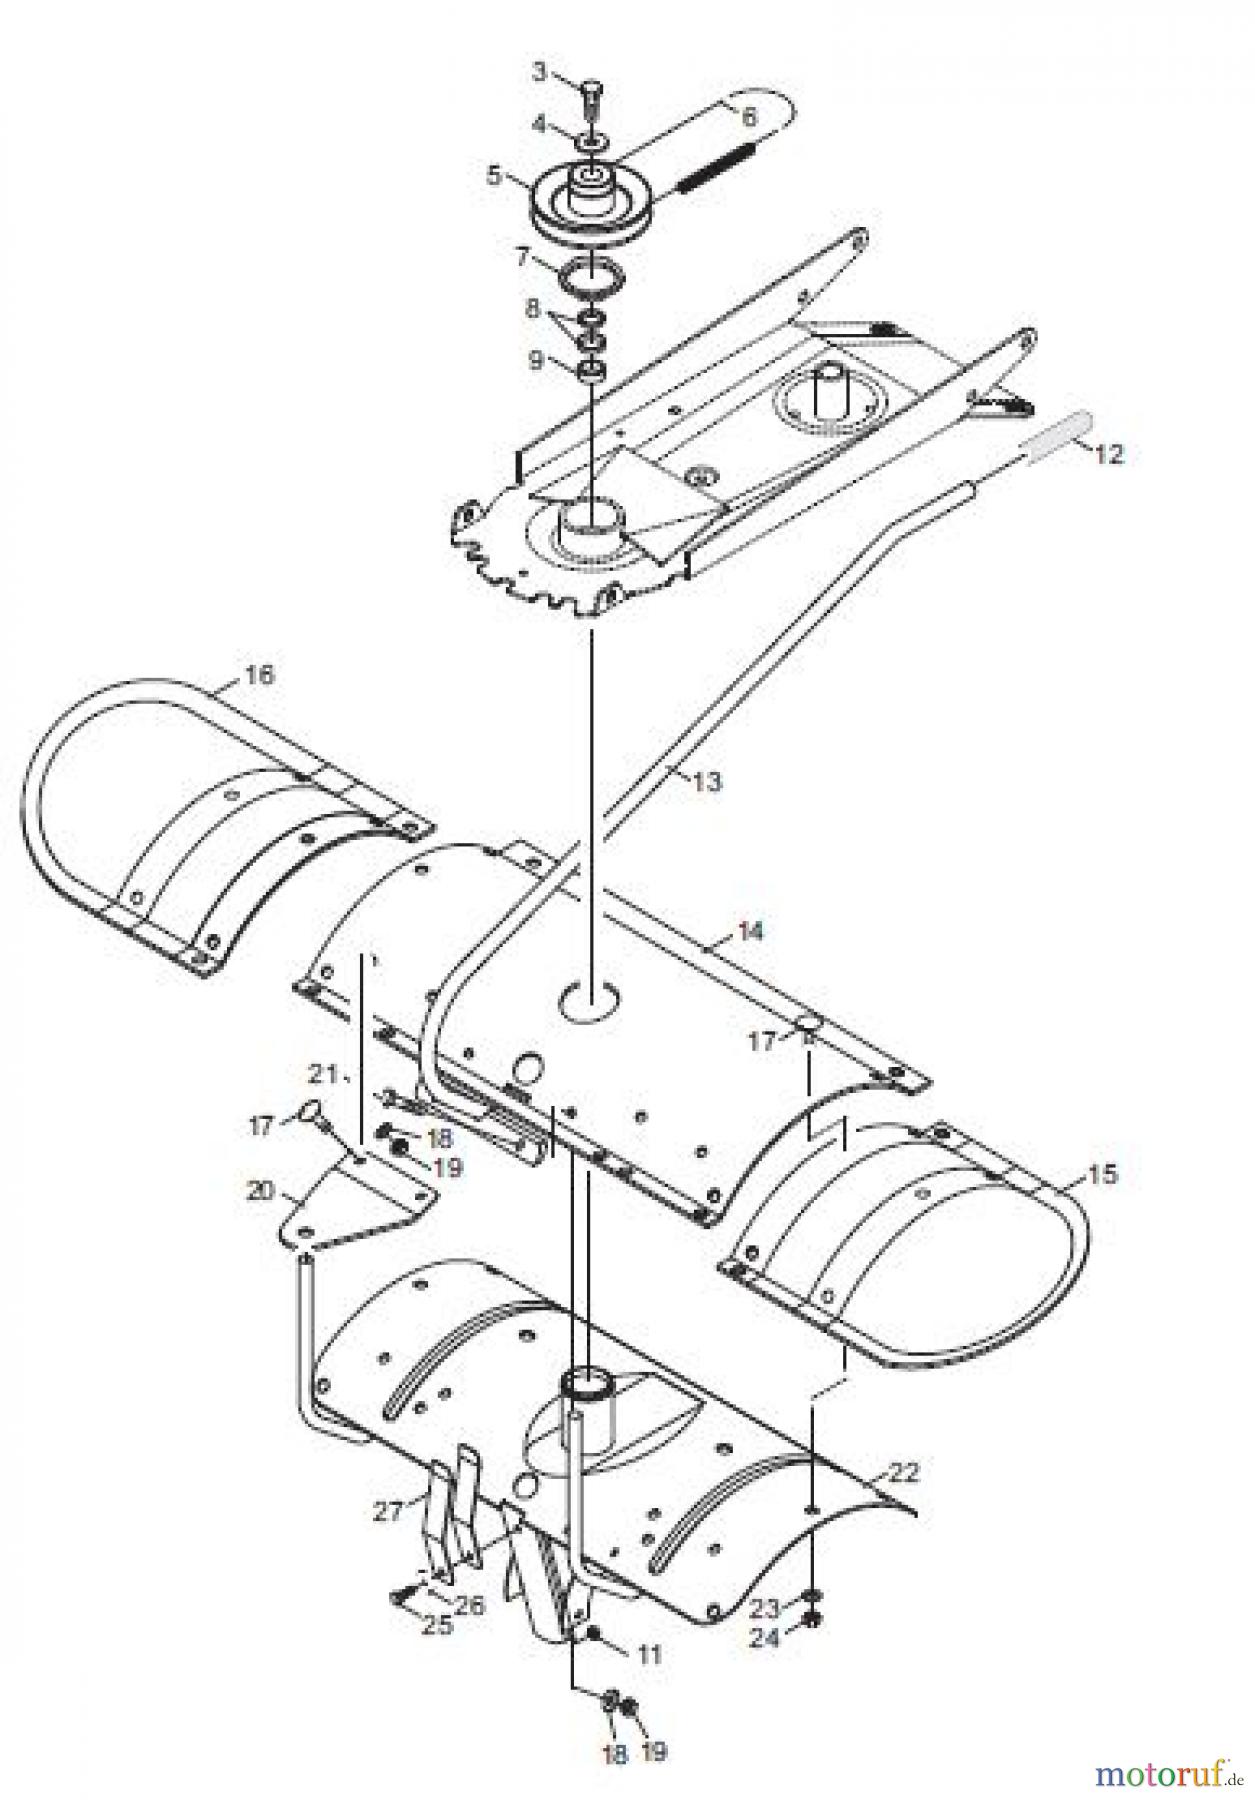  Tielbürger Rasentraktor Zubehör tk522 AN-516-001 Seite 2